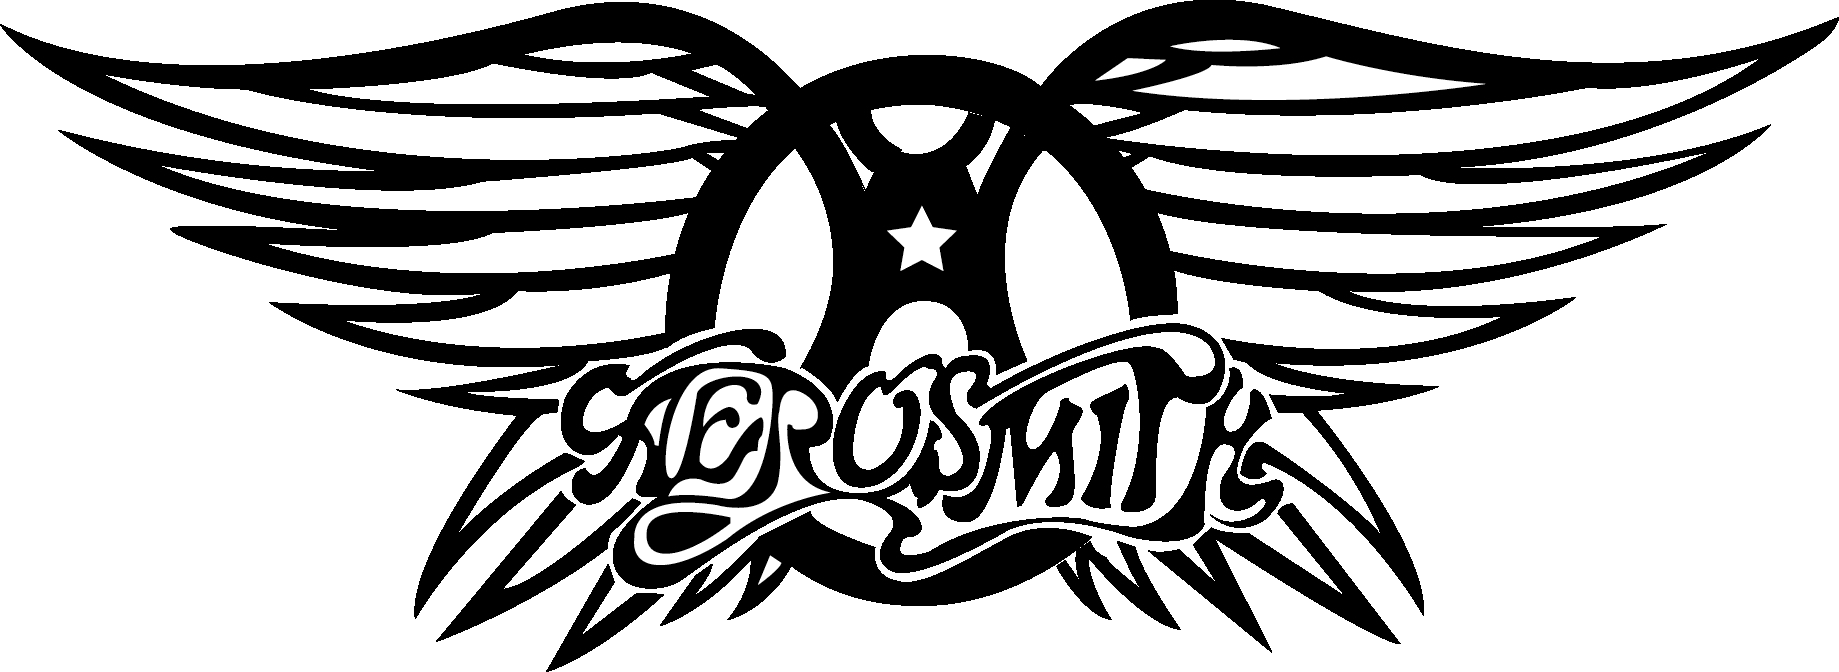 Logo Aerosmith Band HD Image Free PNG Image